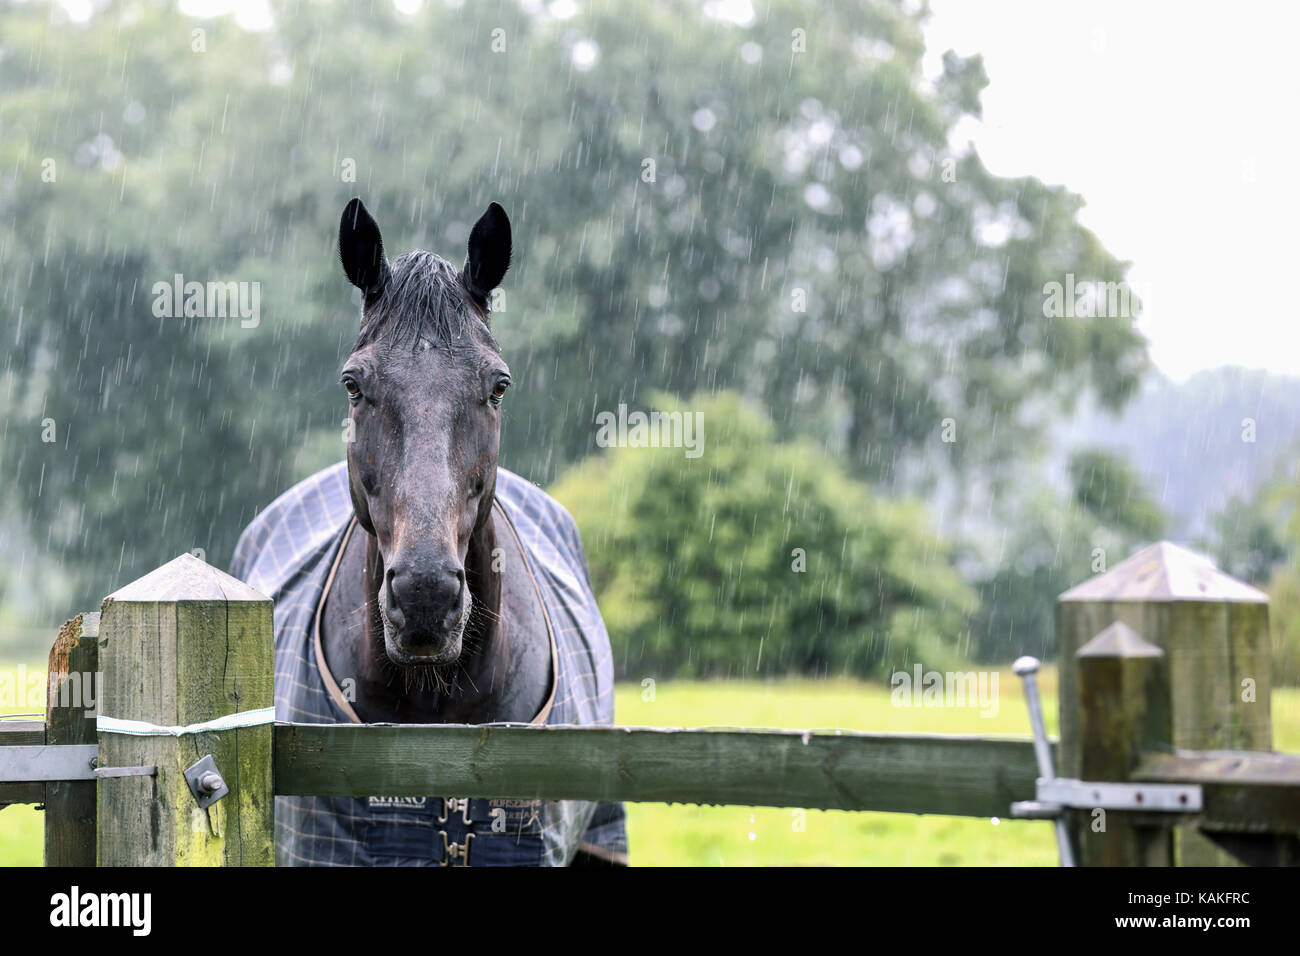 Ein regendurchtränktes Vollblutpferd blickt während eines schweren Regensturms über ein hölzernes Tor. Das Pferd im Regenmantel wurde in einem umzäunten Fahrerlager ausgelassen Stockfoto